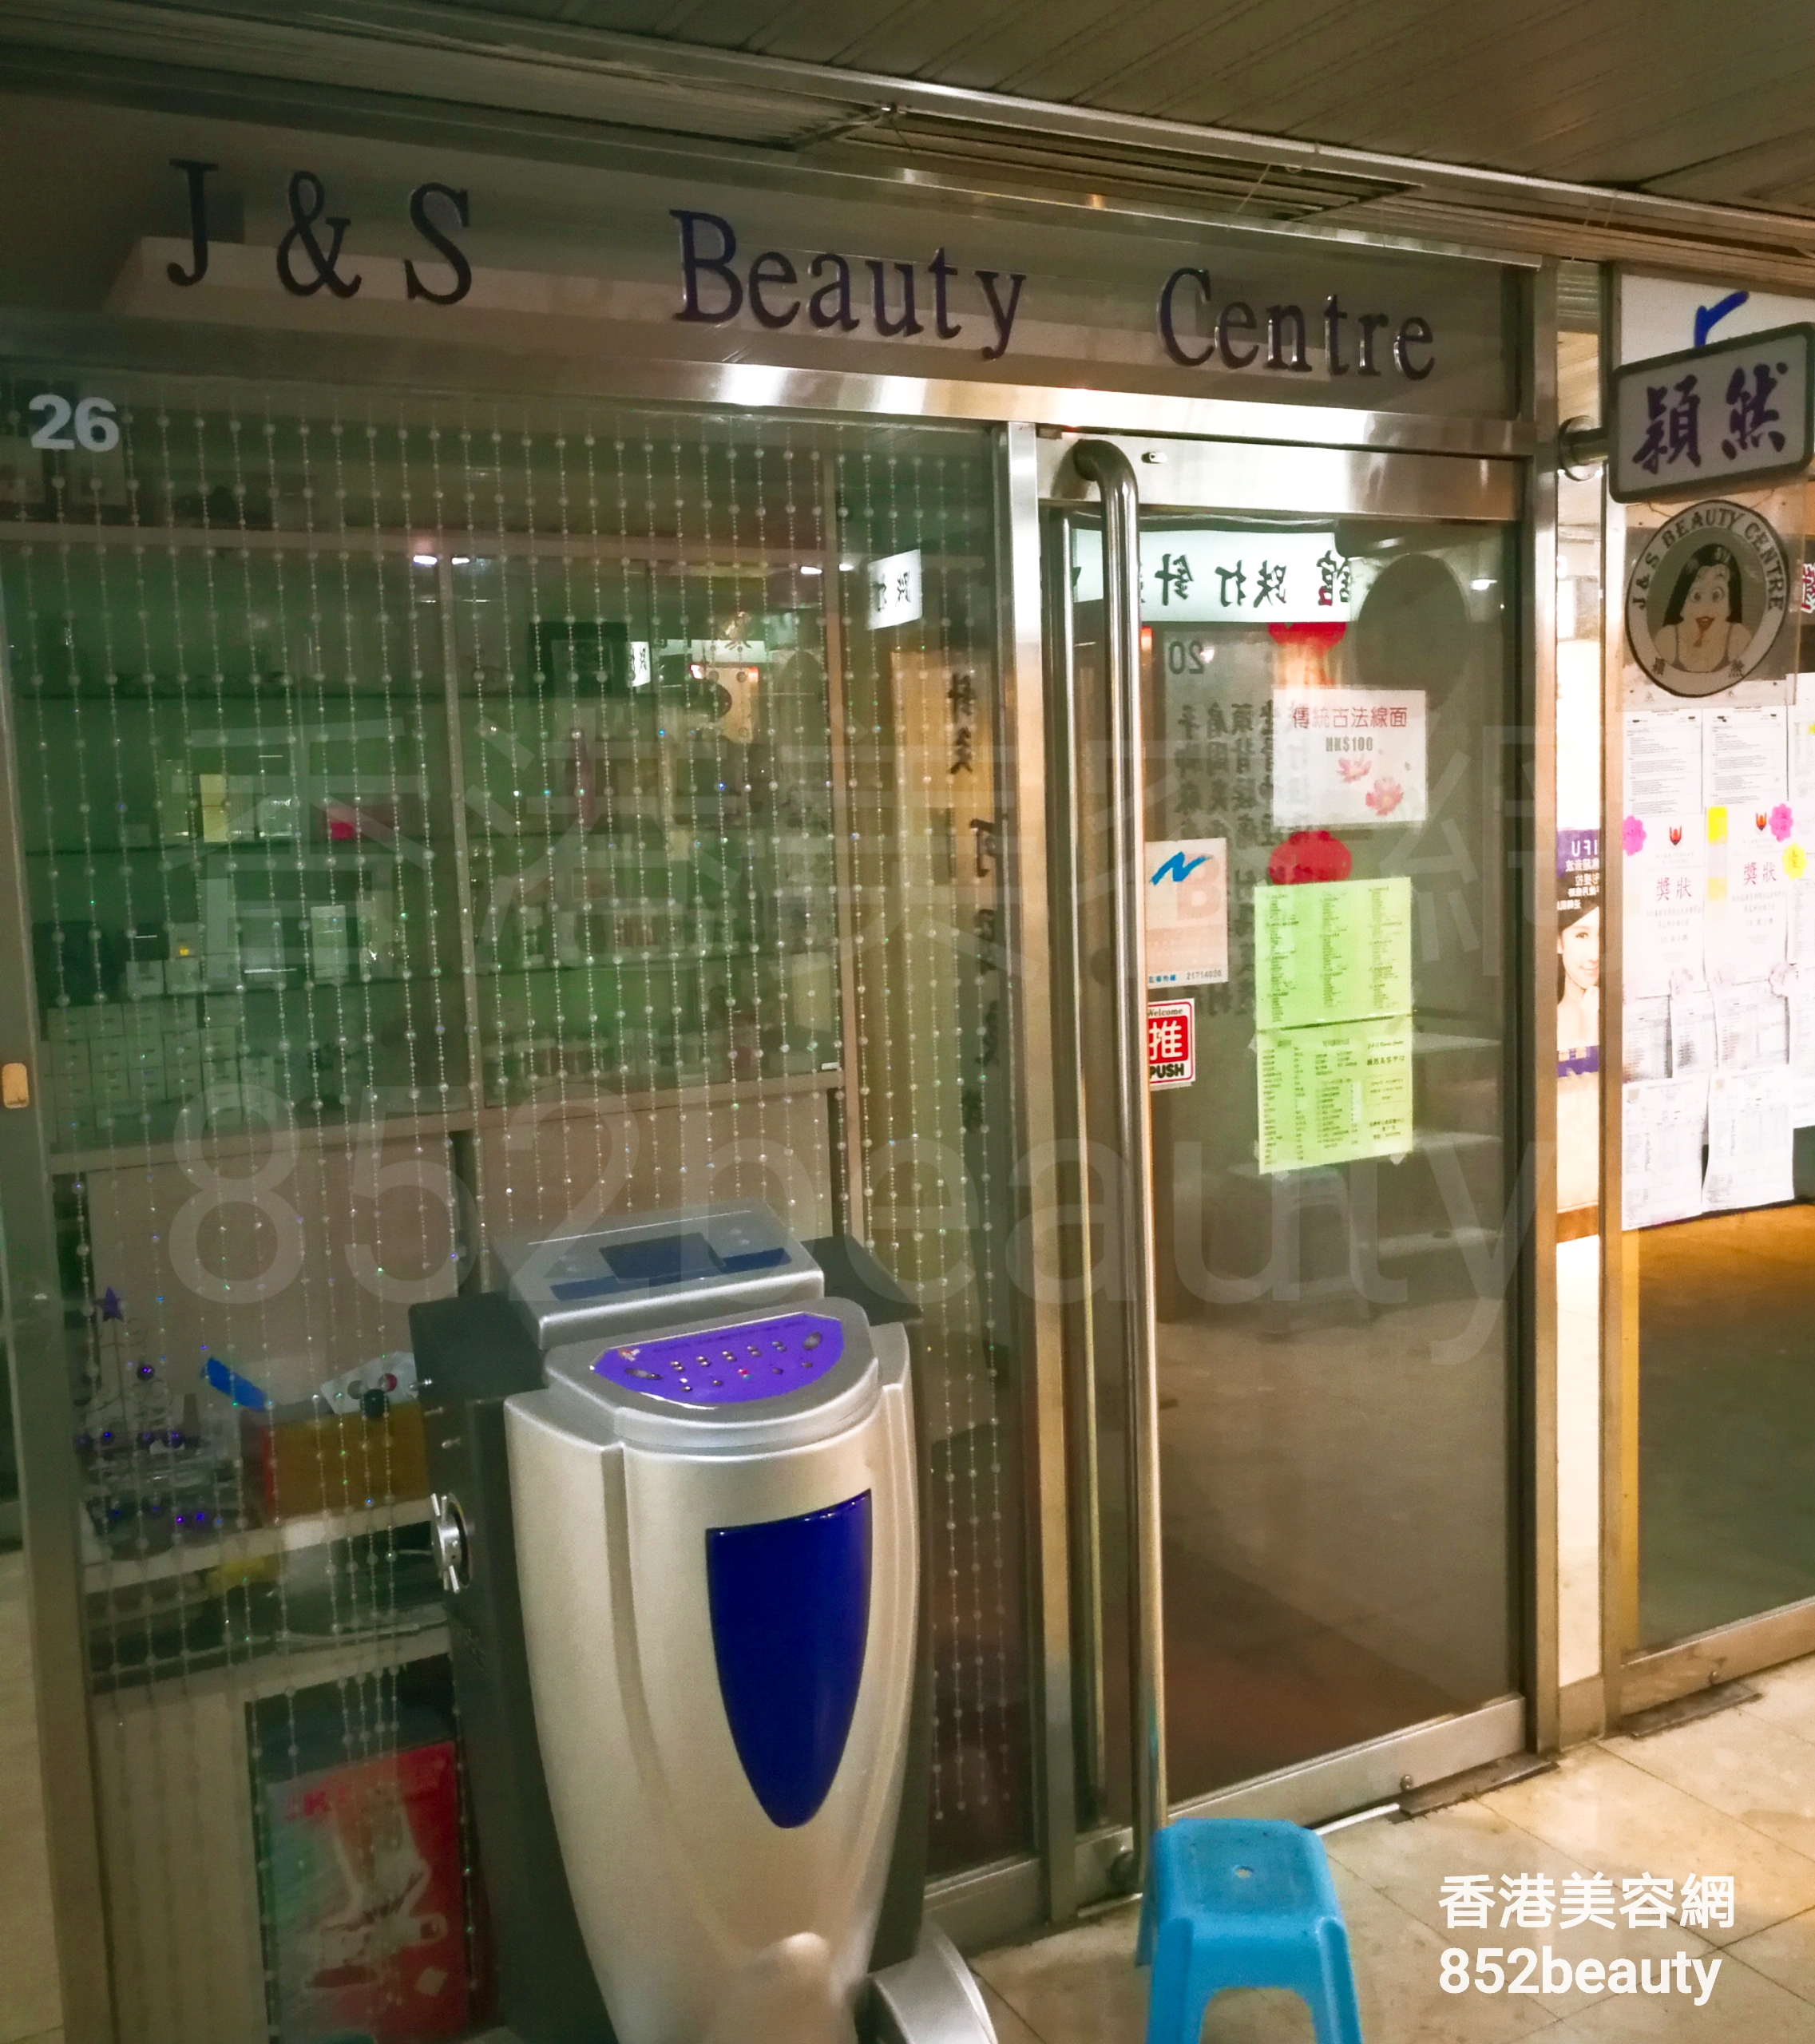 面部護理: J&S Beauty Centre 穎然美容中心